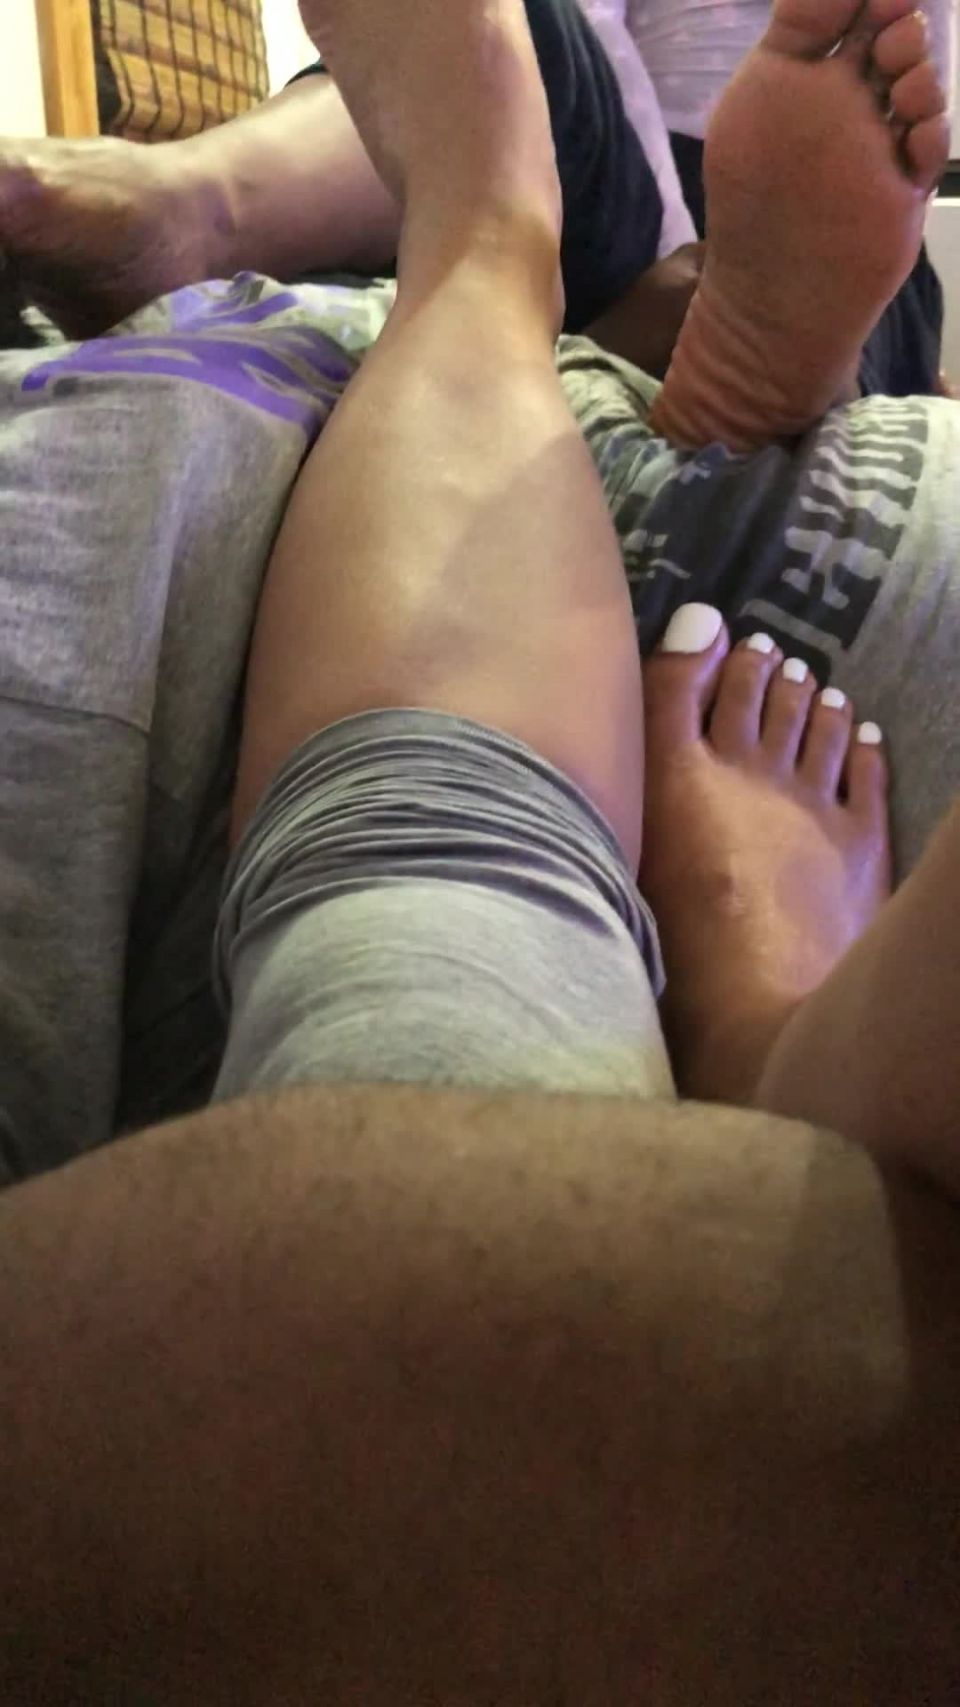  feet porn | QueenVeinyFeet 0609 - 123 | feet